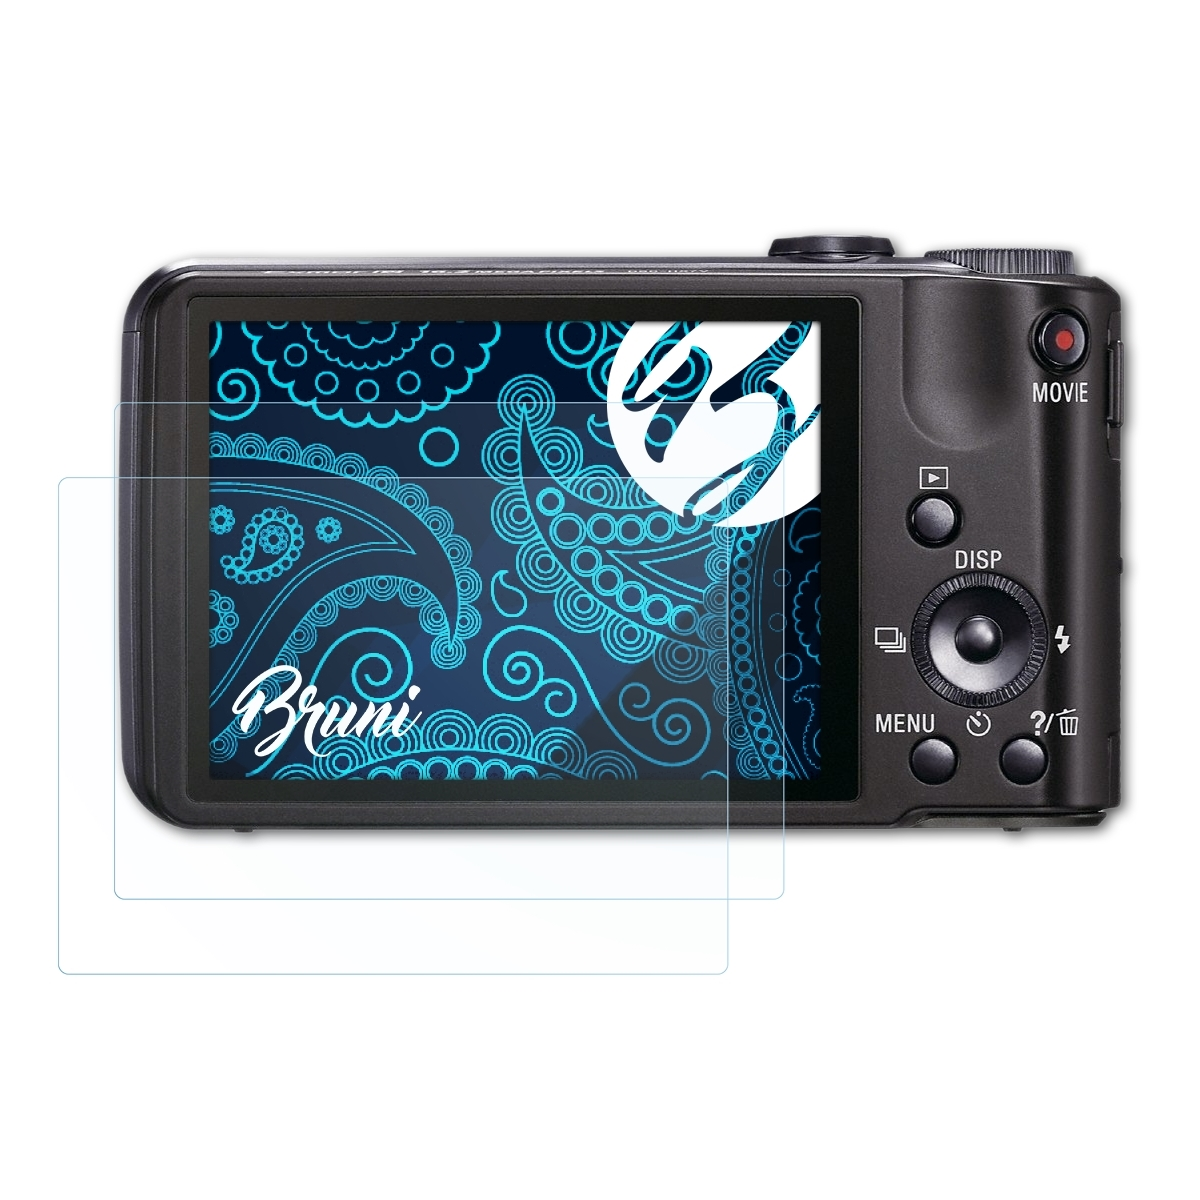 BRUNI 2x Basics-Clear Schutzfolie(für Sony DSC-HX7V)